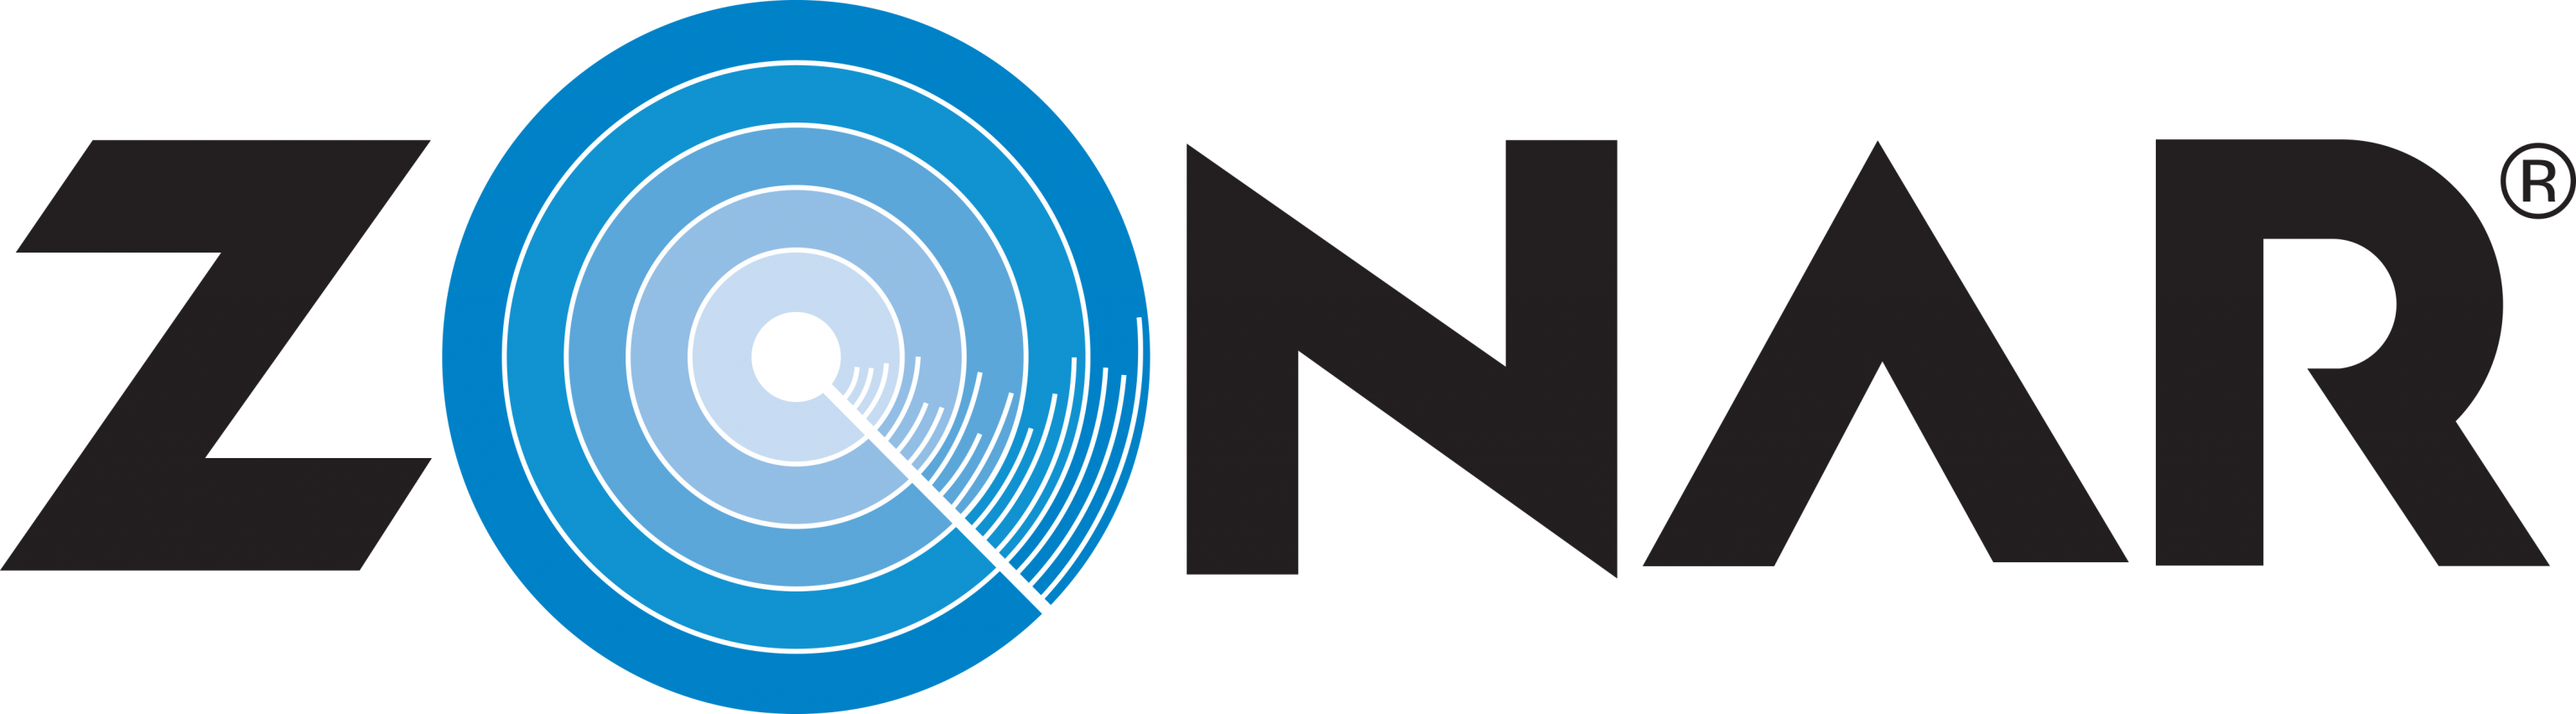 Zonar logo